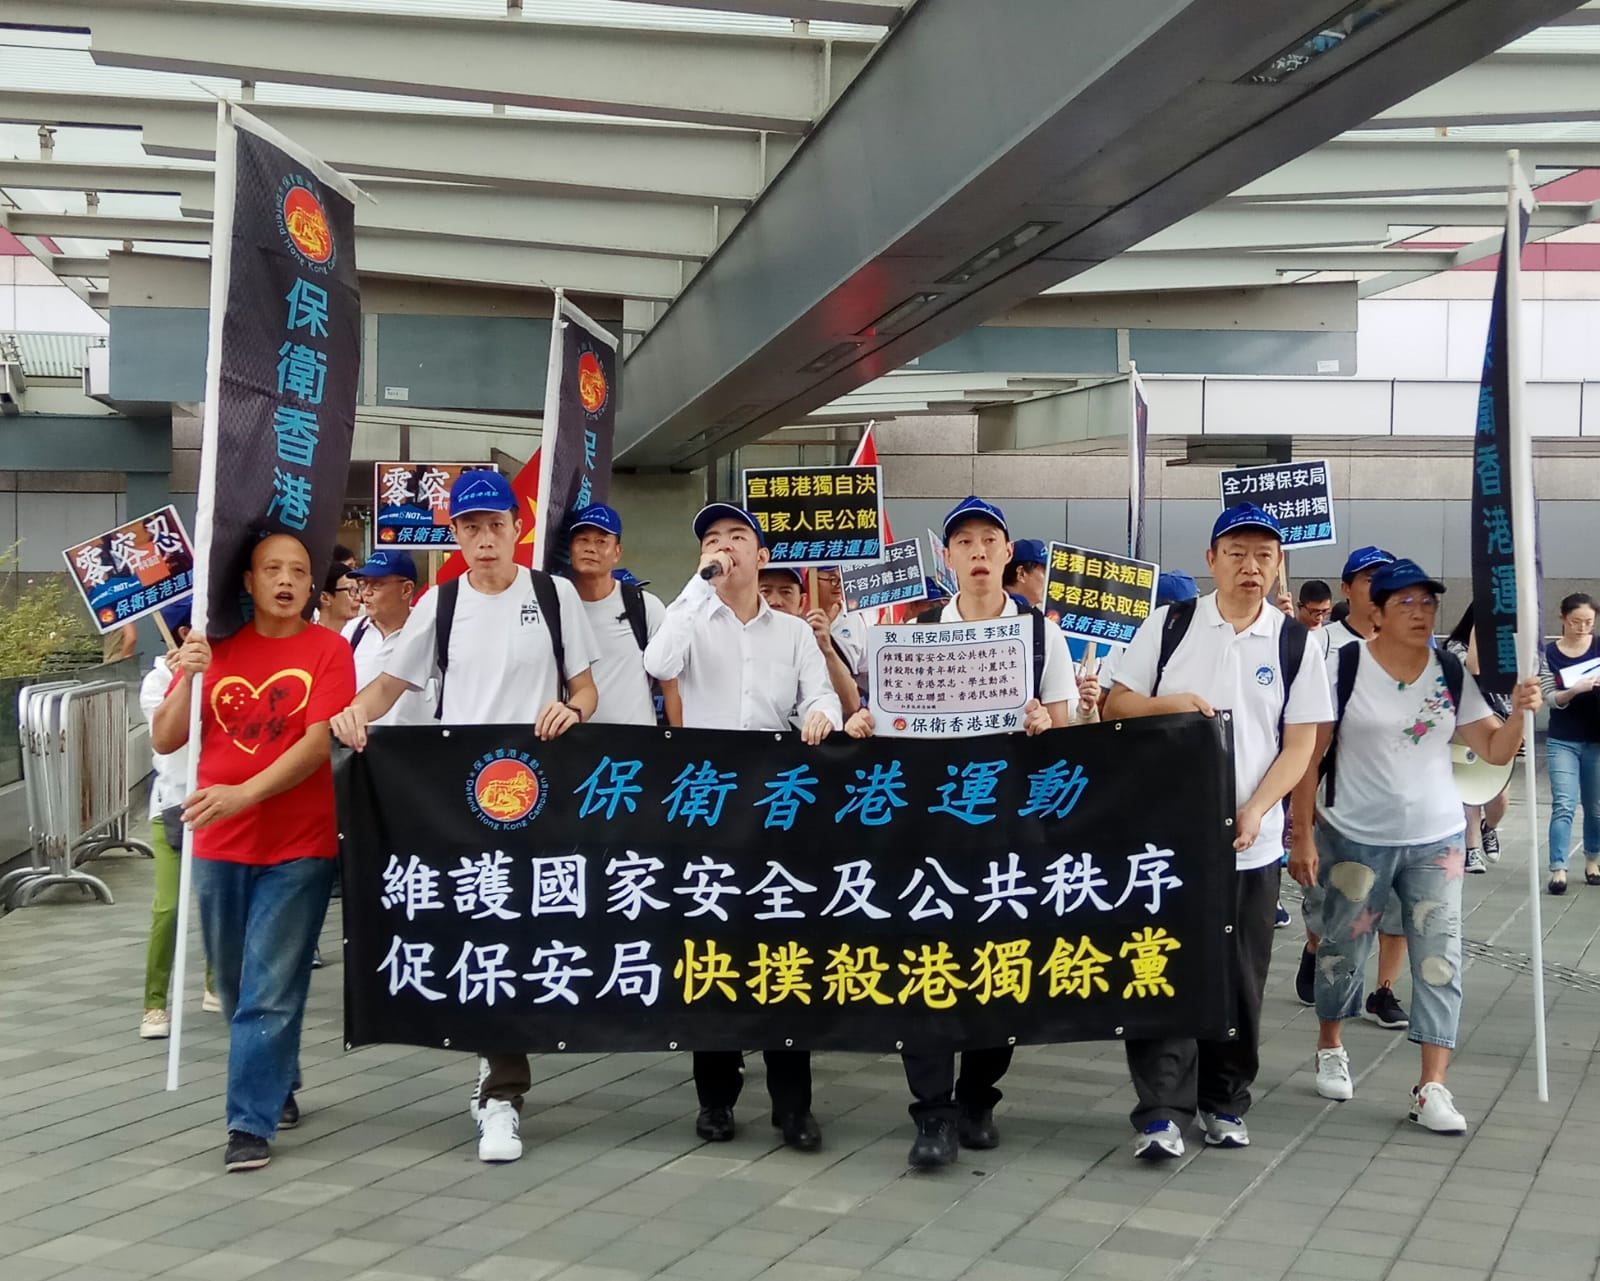 「保衛香港運動」主辦 : 「促請保安局封殺港獨餘黨」遊行集會